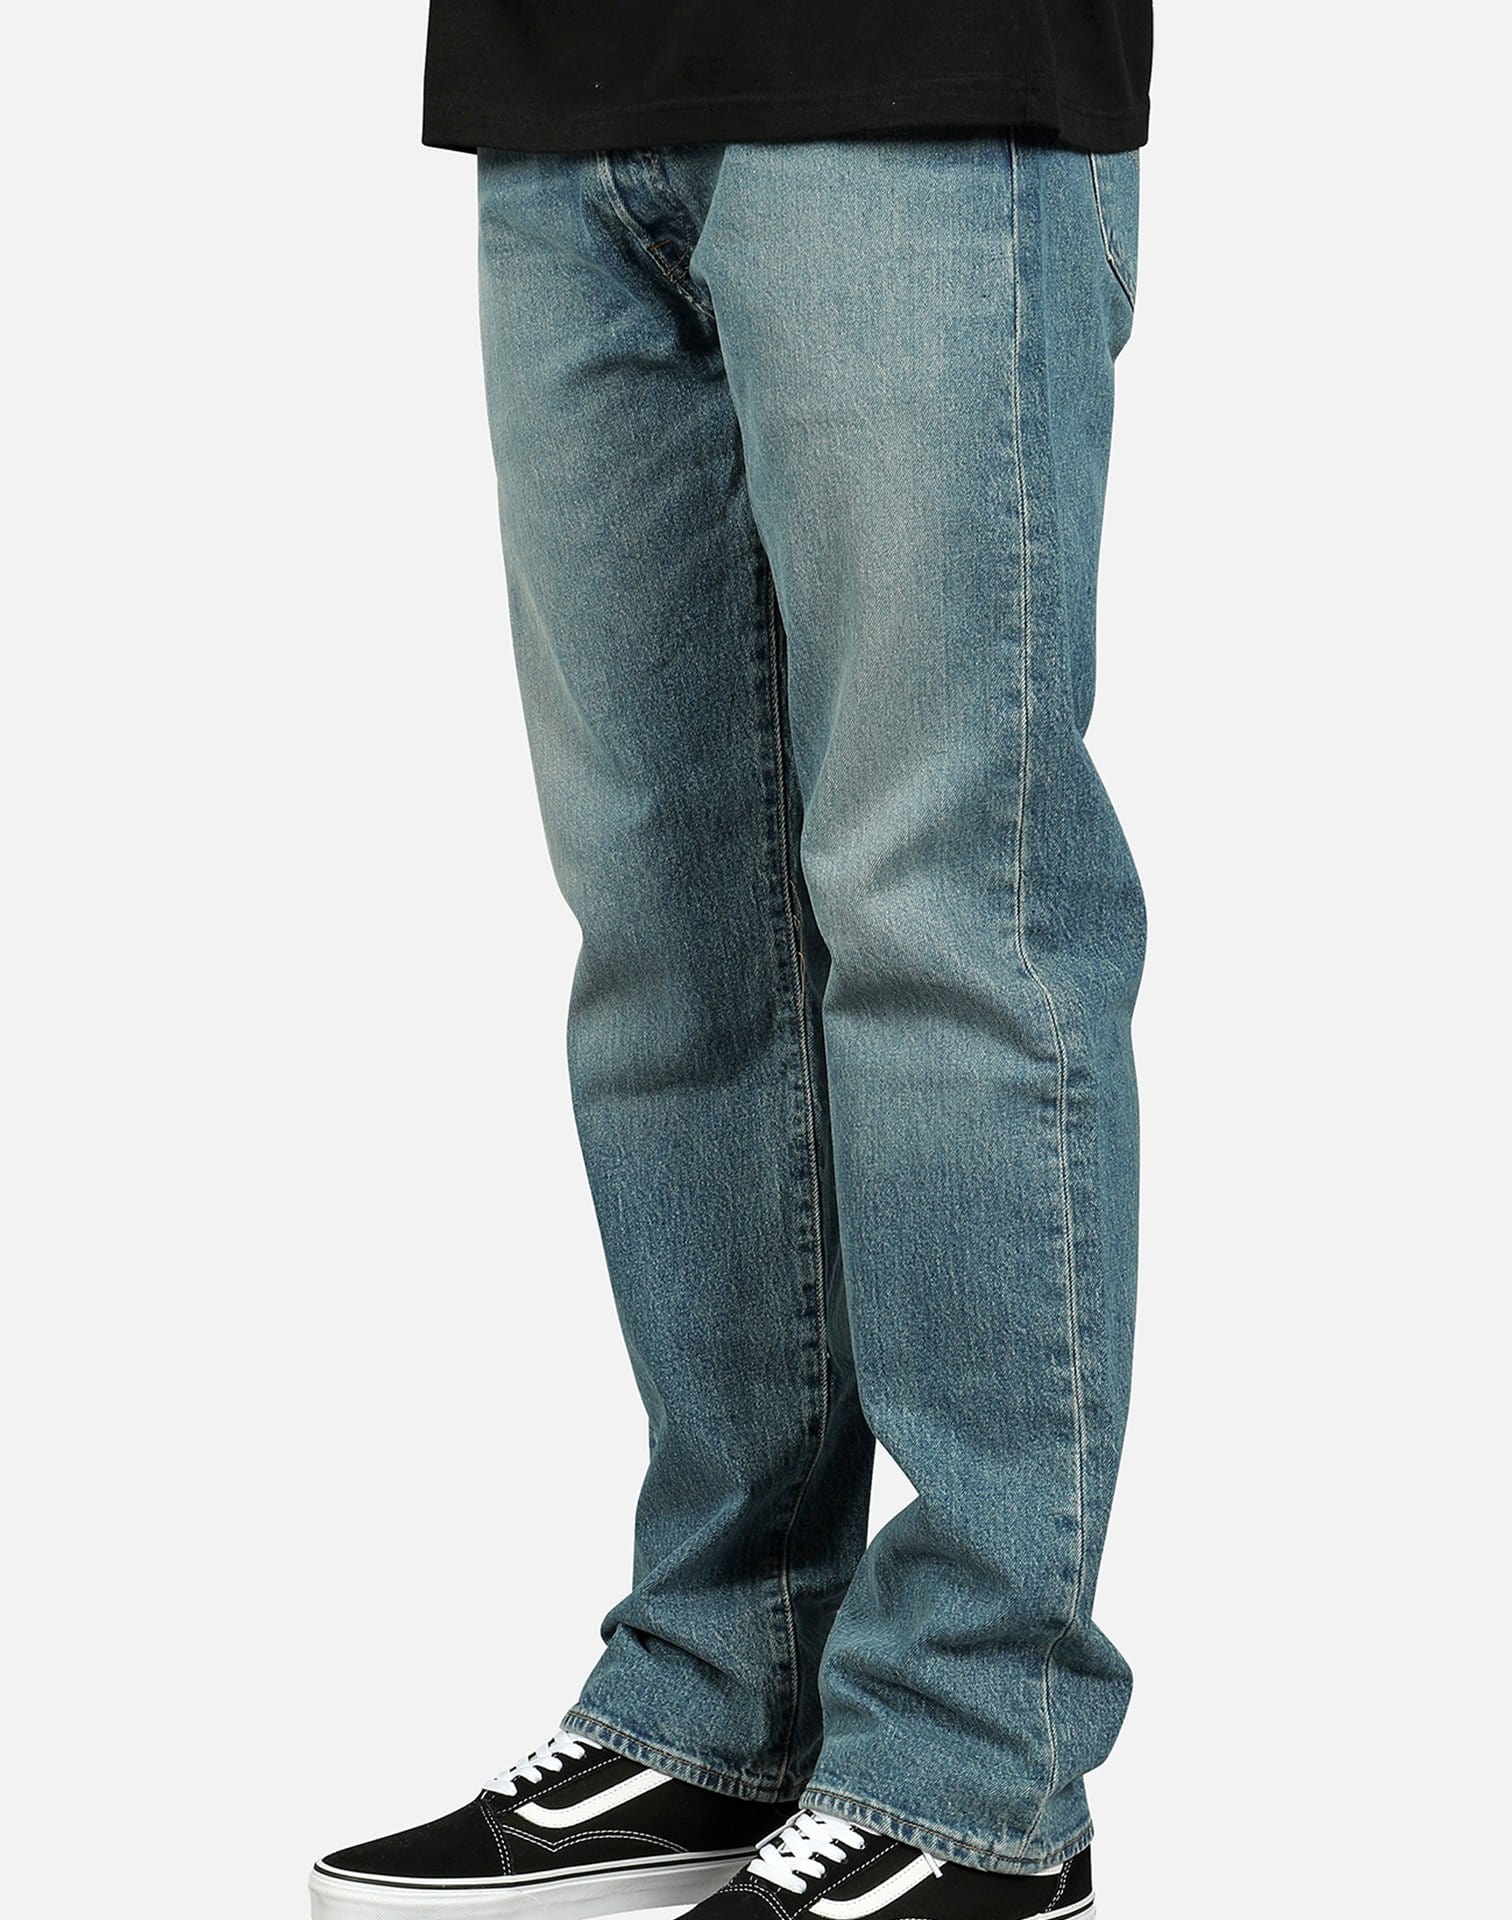 Levi's Men's 501 Original Fit Stretch Jeans